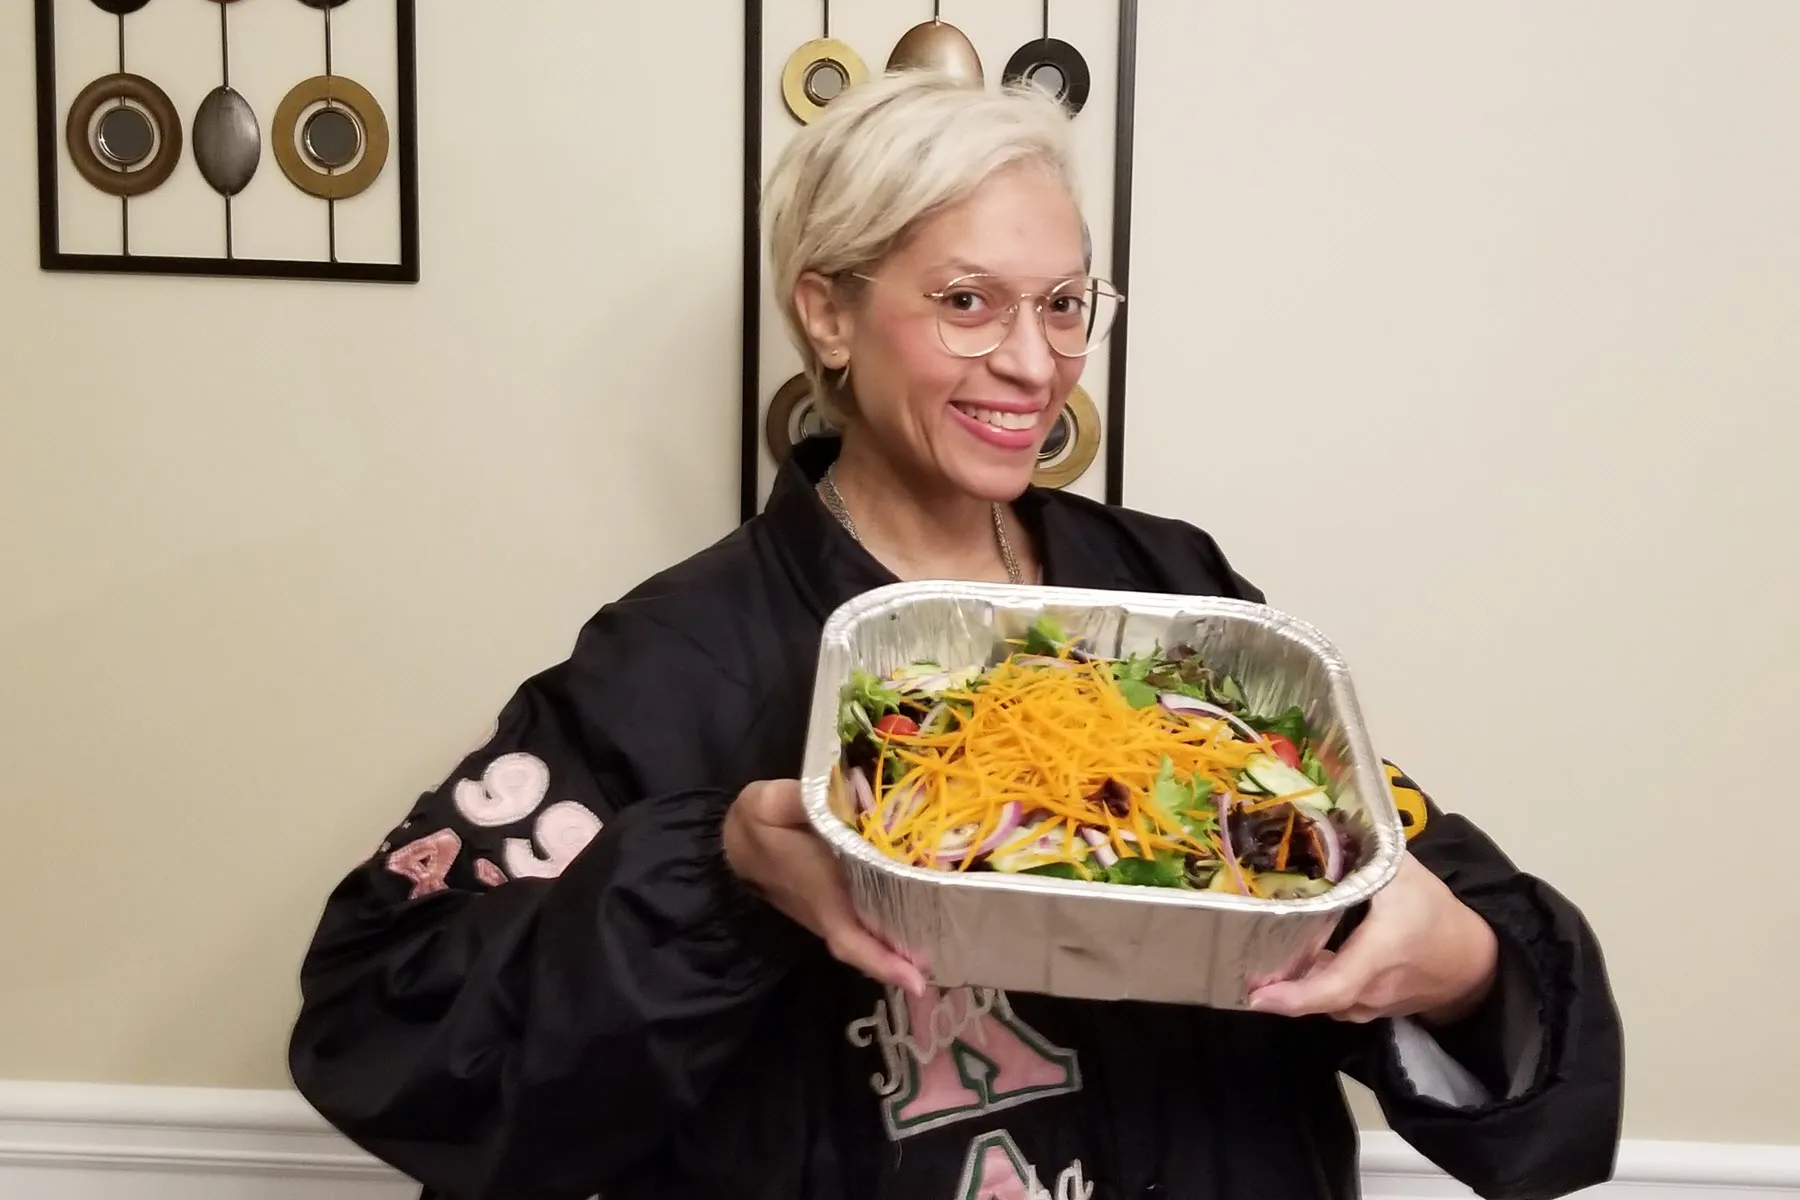 Laura salad